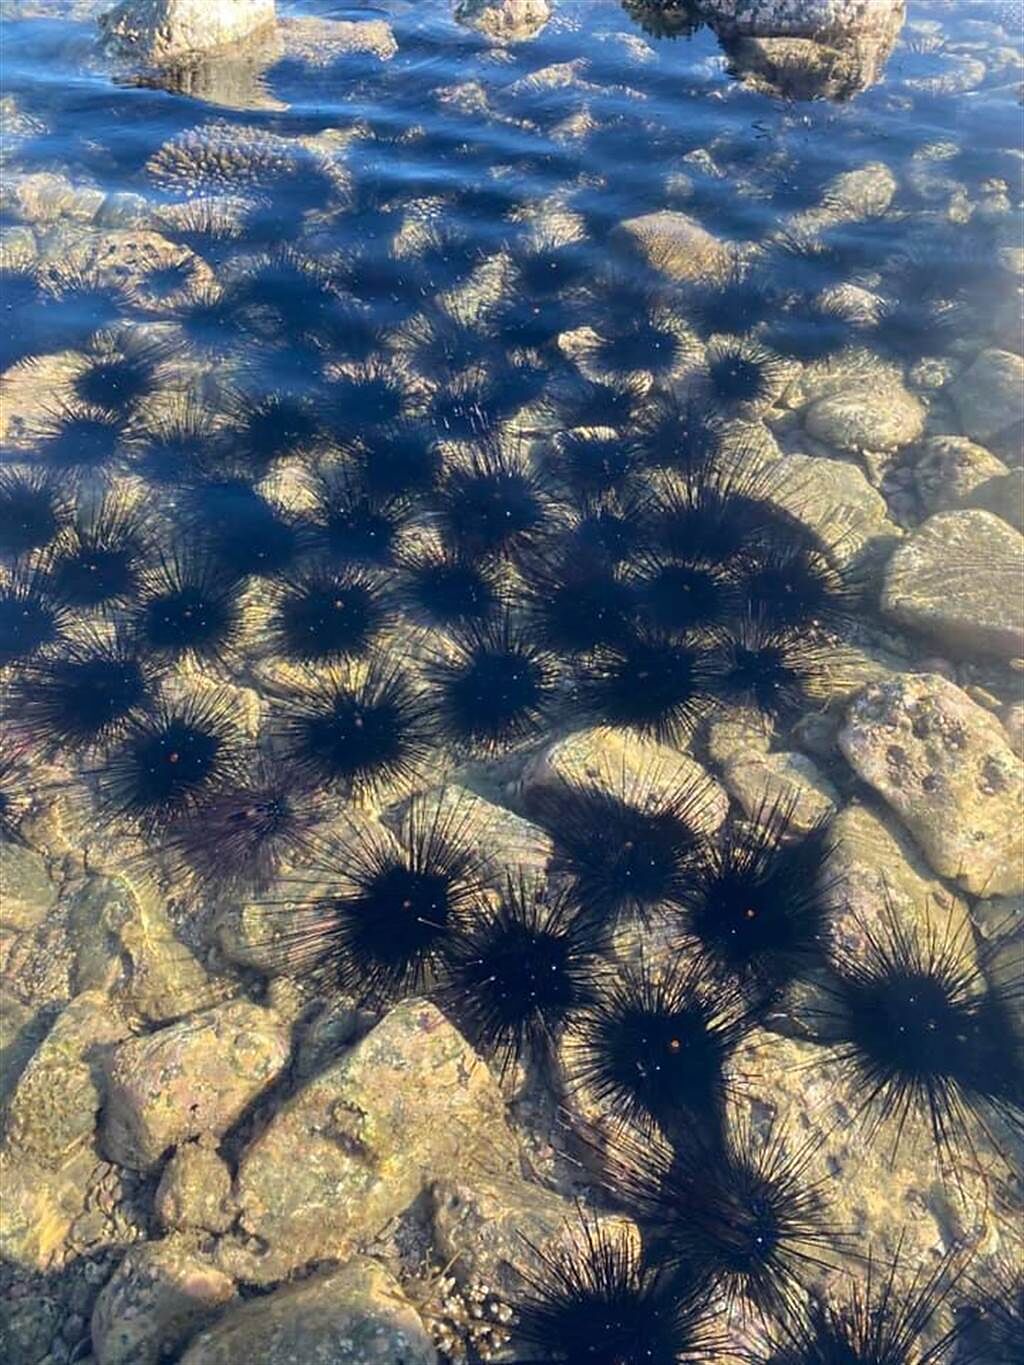 澎湖觀音亭海岸邊出現成千上萬的魔鬼海膽，畫面非常難得。(圖翻攝自臉書社團/看見澎湖)